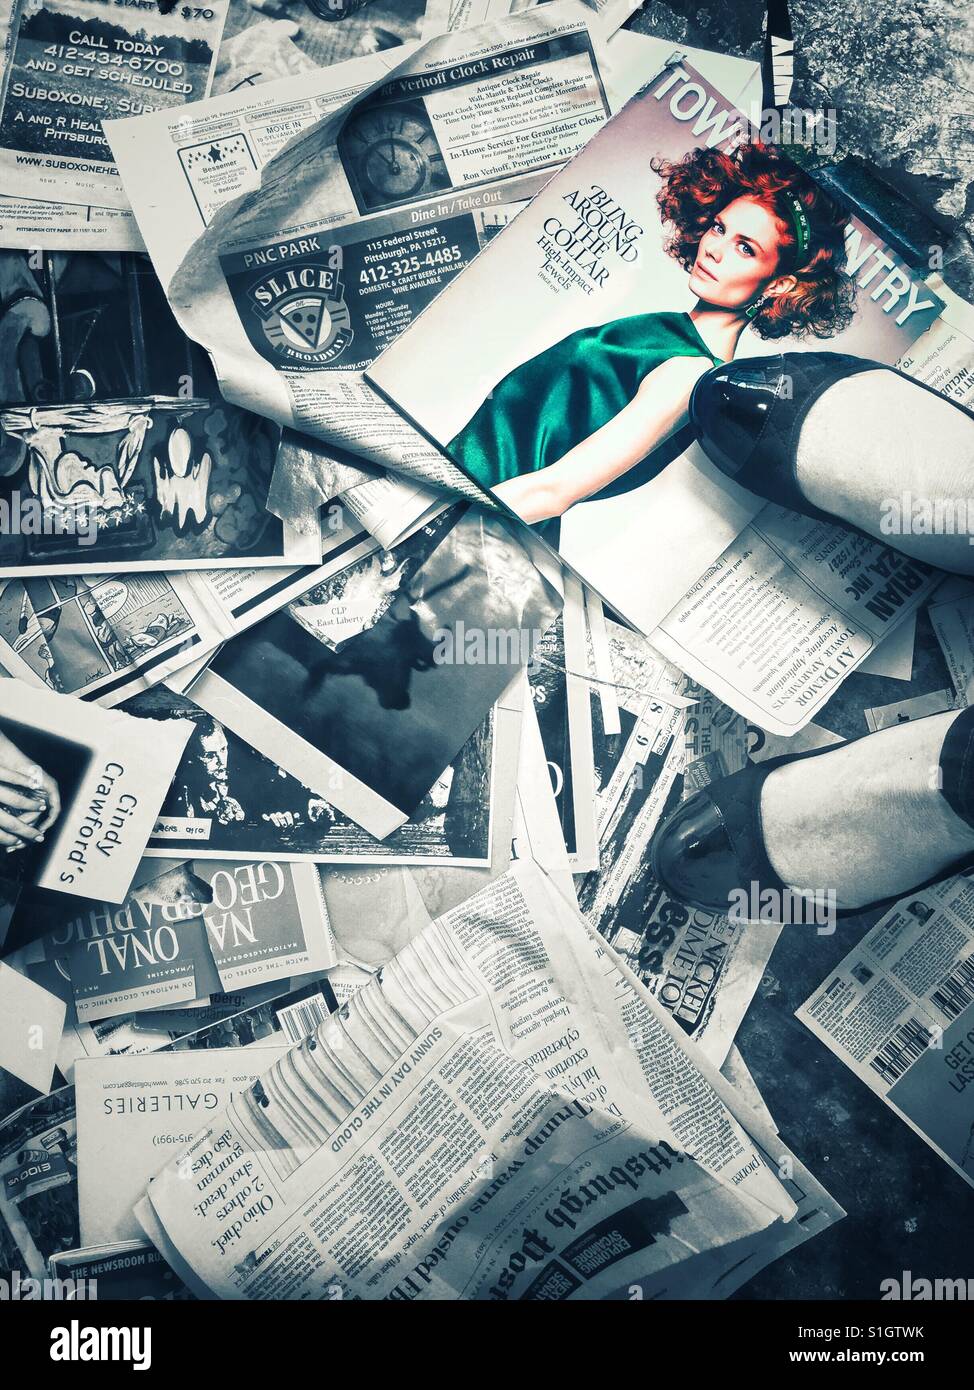 Un immagine astratta di una donna in piedi sulla parte superiore dei ritagli di riviste e giornali sparsi sul pavimento Foto Stock